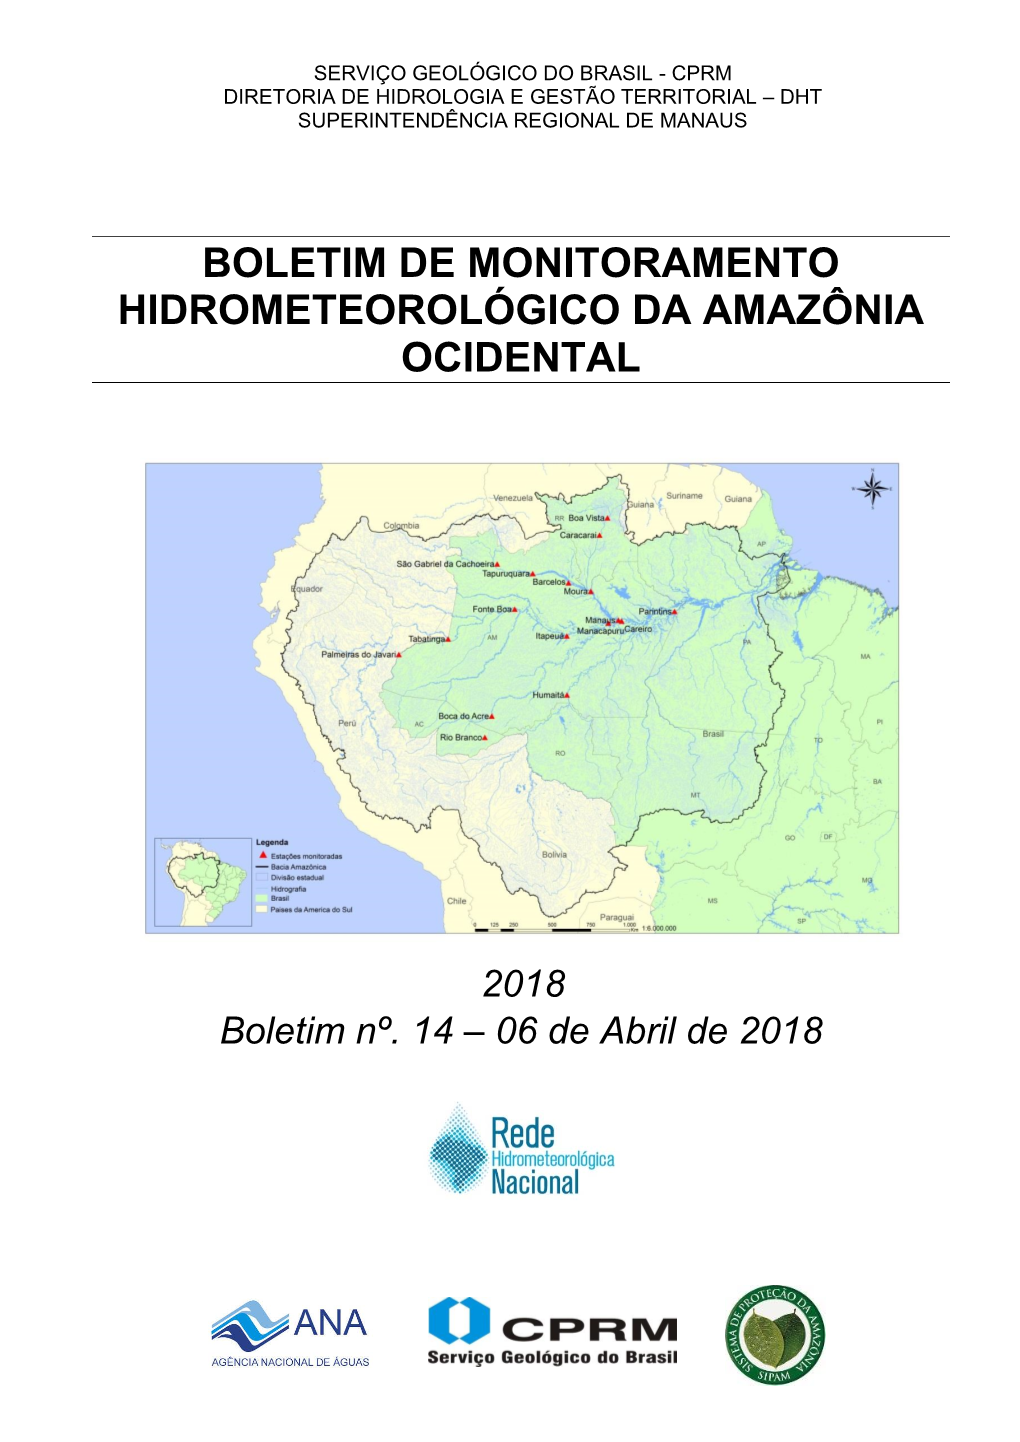 (2018). Boletim De Monitoramento Hidrometeorológico Da Amazônia